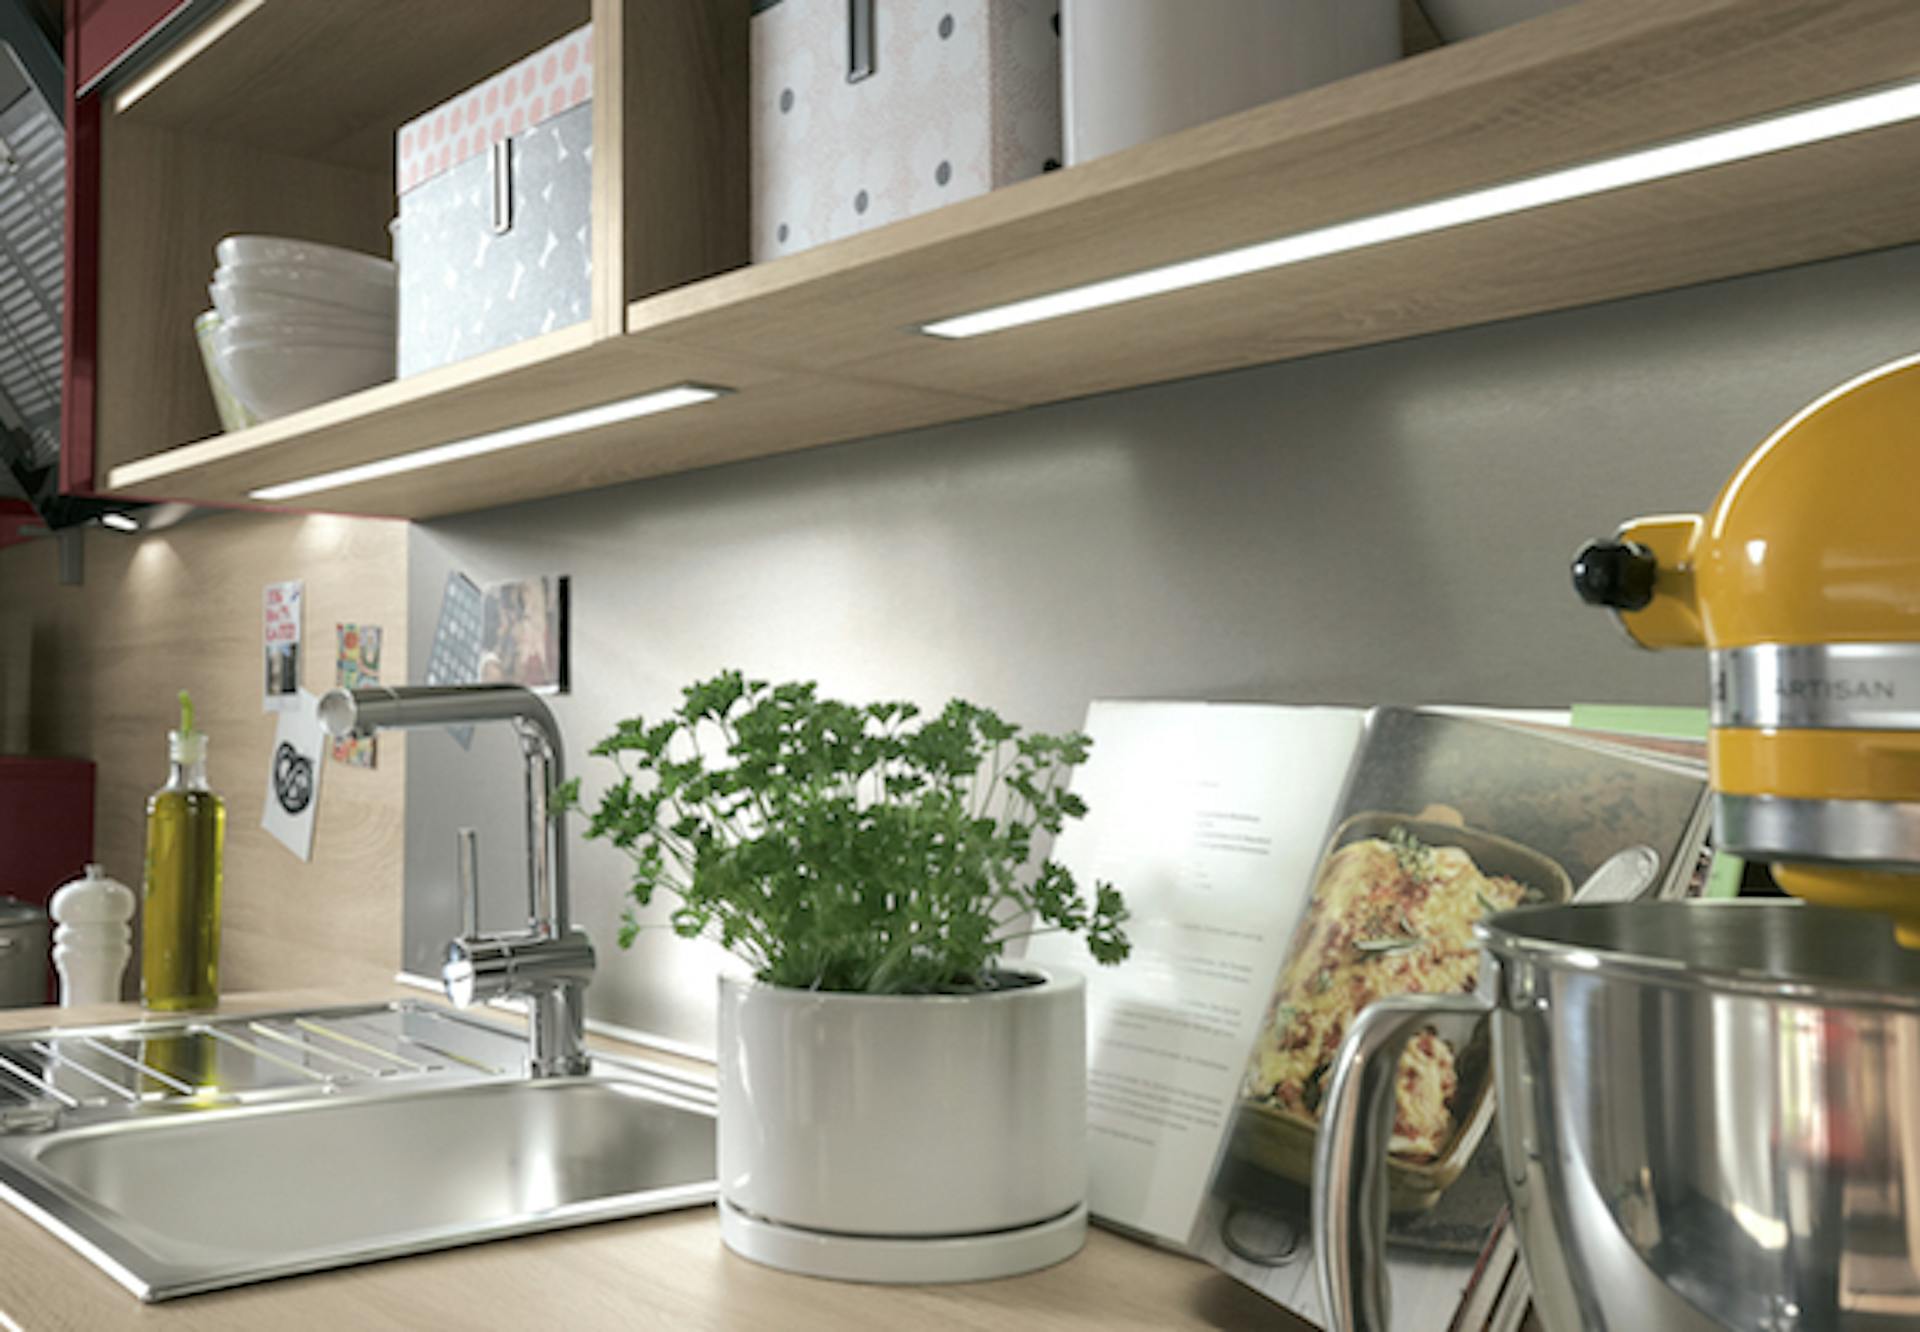 Utilizzare correttamente l'illuminazione della cucina e gli accessori